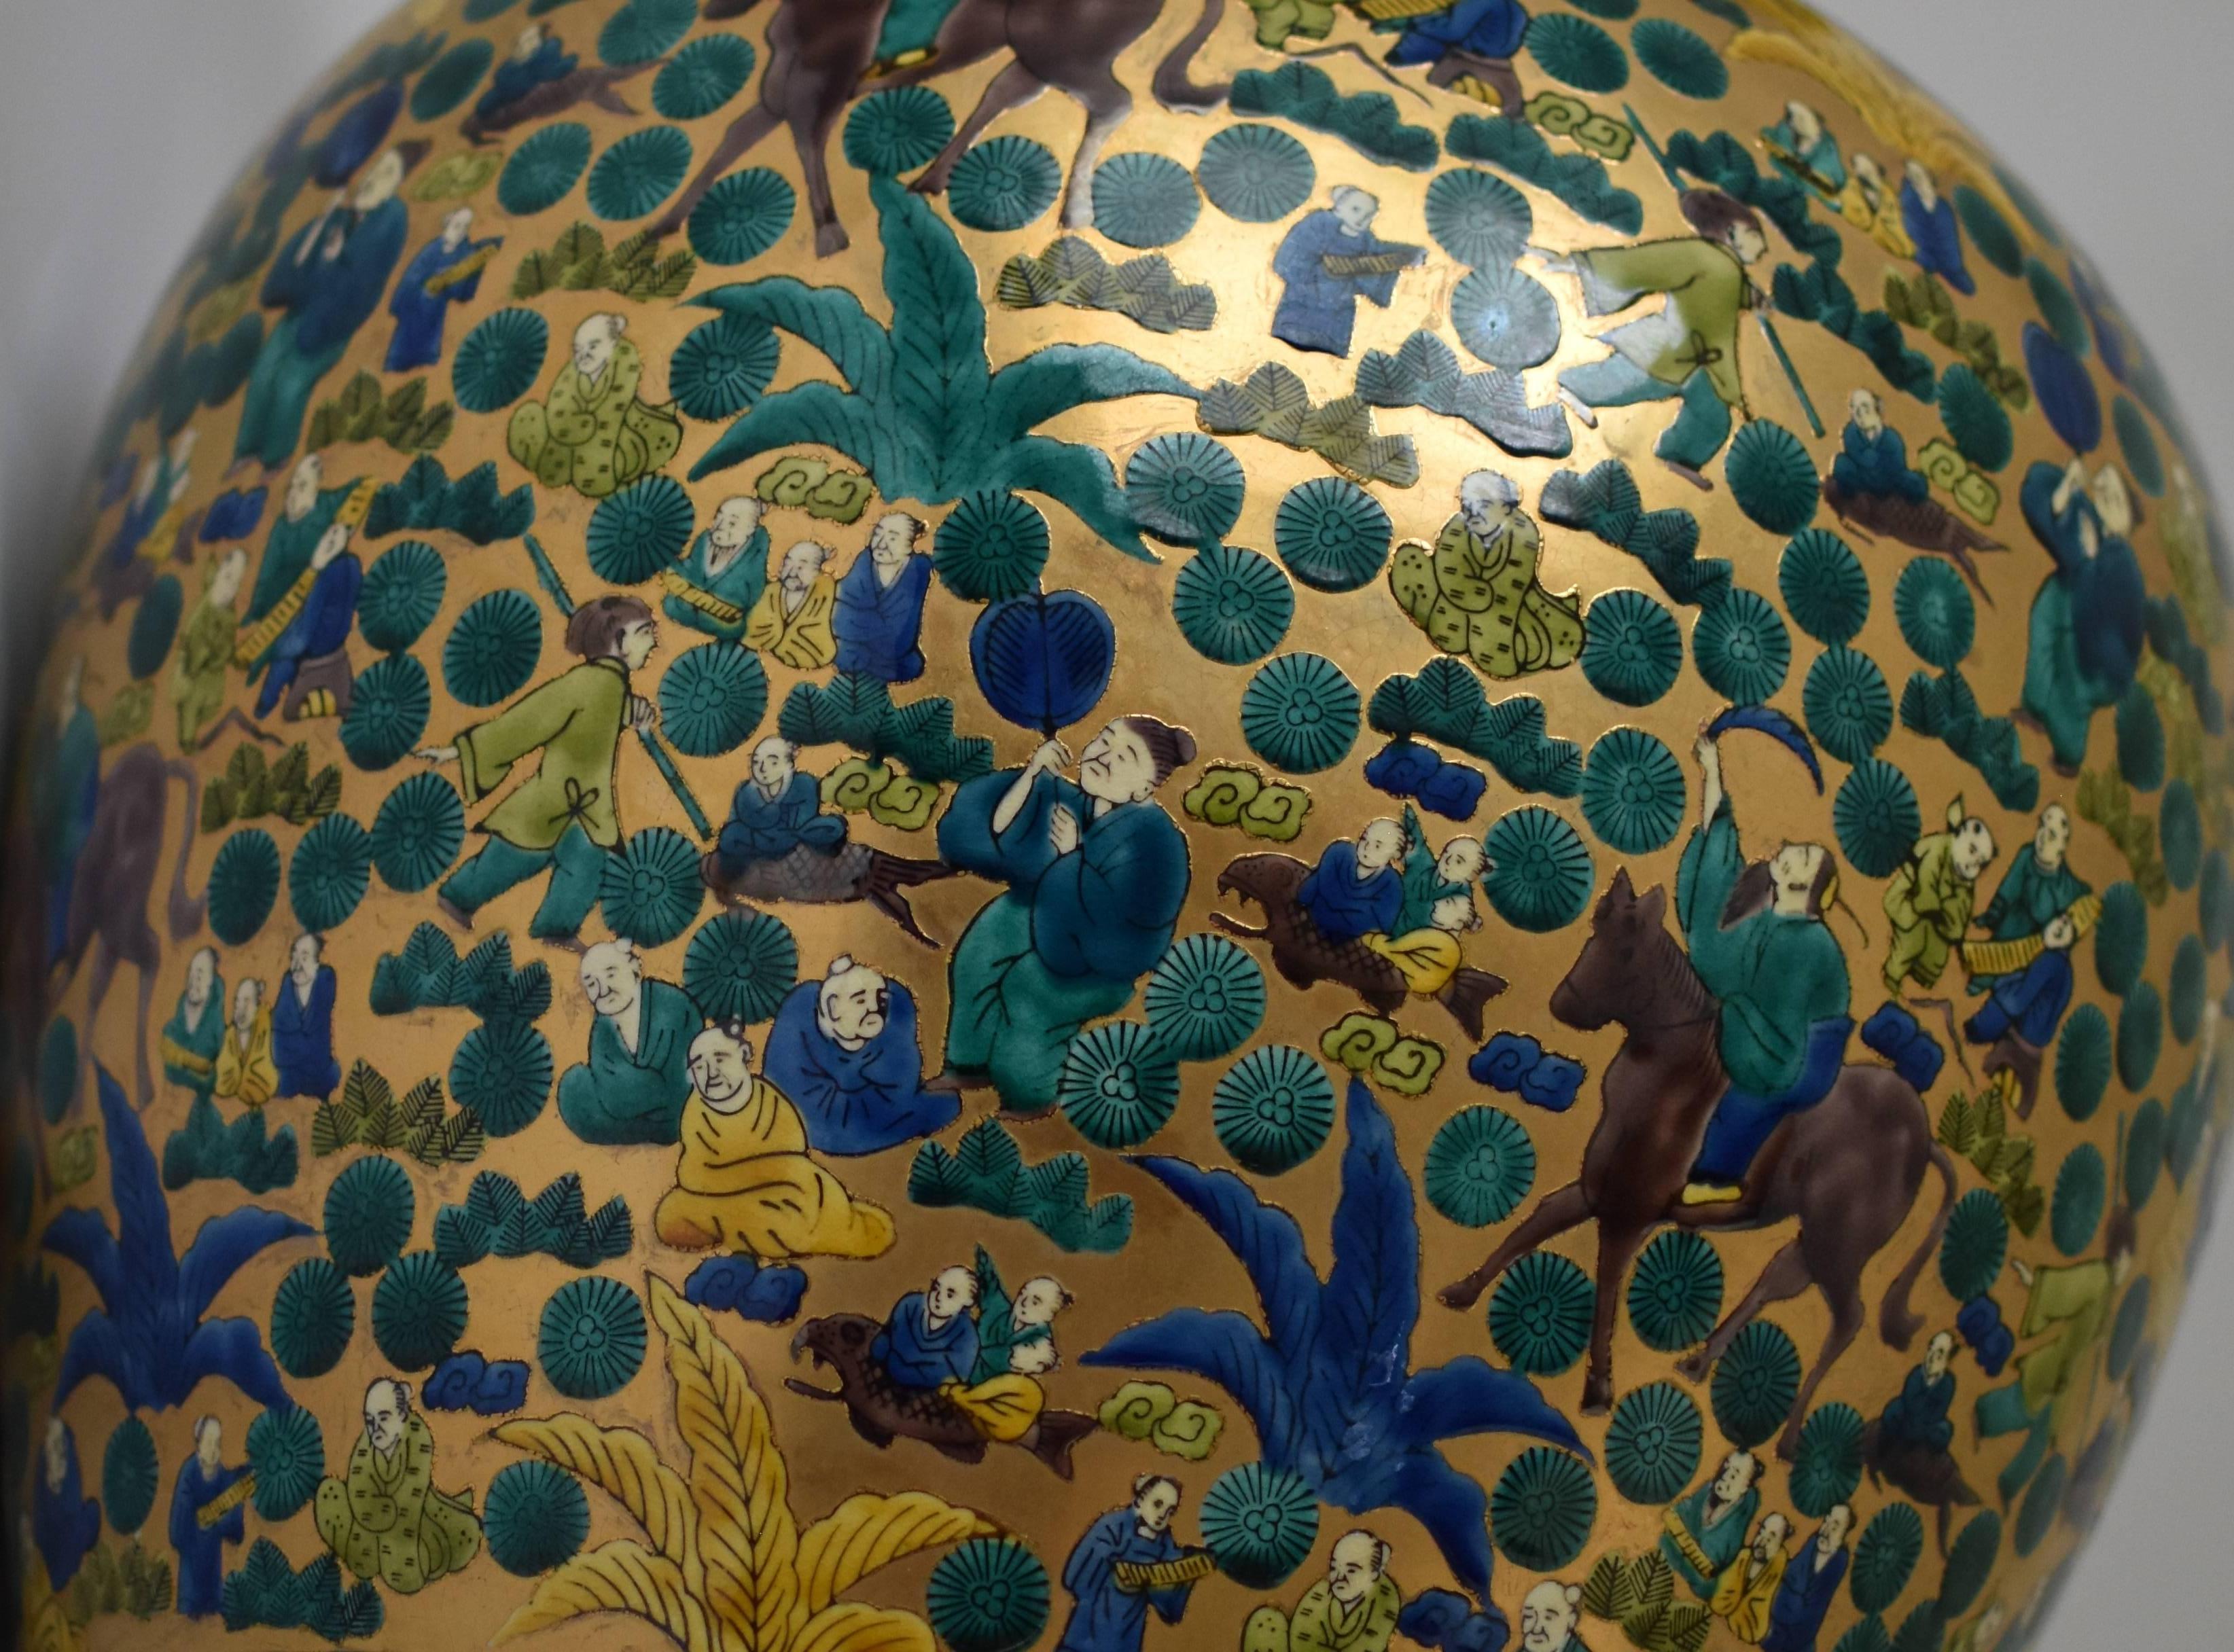 Außergewöhnliche große zeitgenössische japanische Vase aus vergoldetem Porzellan in Museumsqualität, extrem aufwendig handbemalt im atemberaubenden Kutani-Mokubei-Stil  vor einem markanten Hintergrund aus hochreinem Gold. Der Künstler hat Gelb,